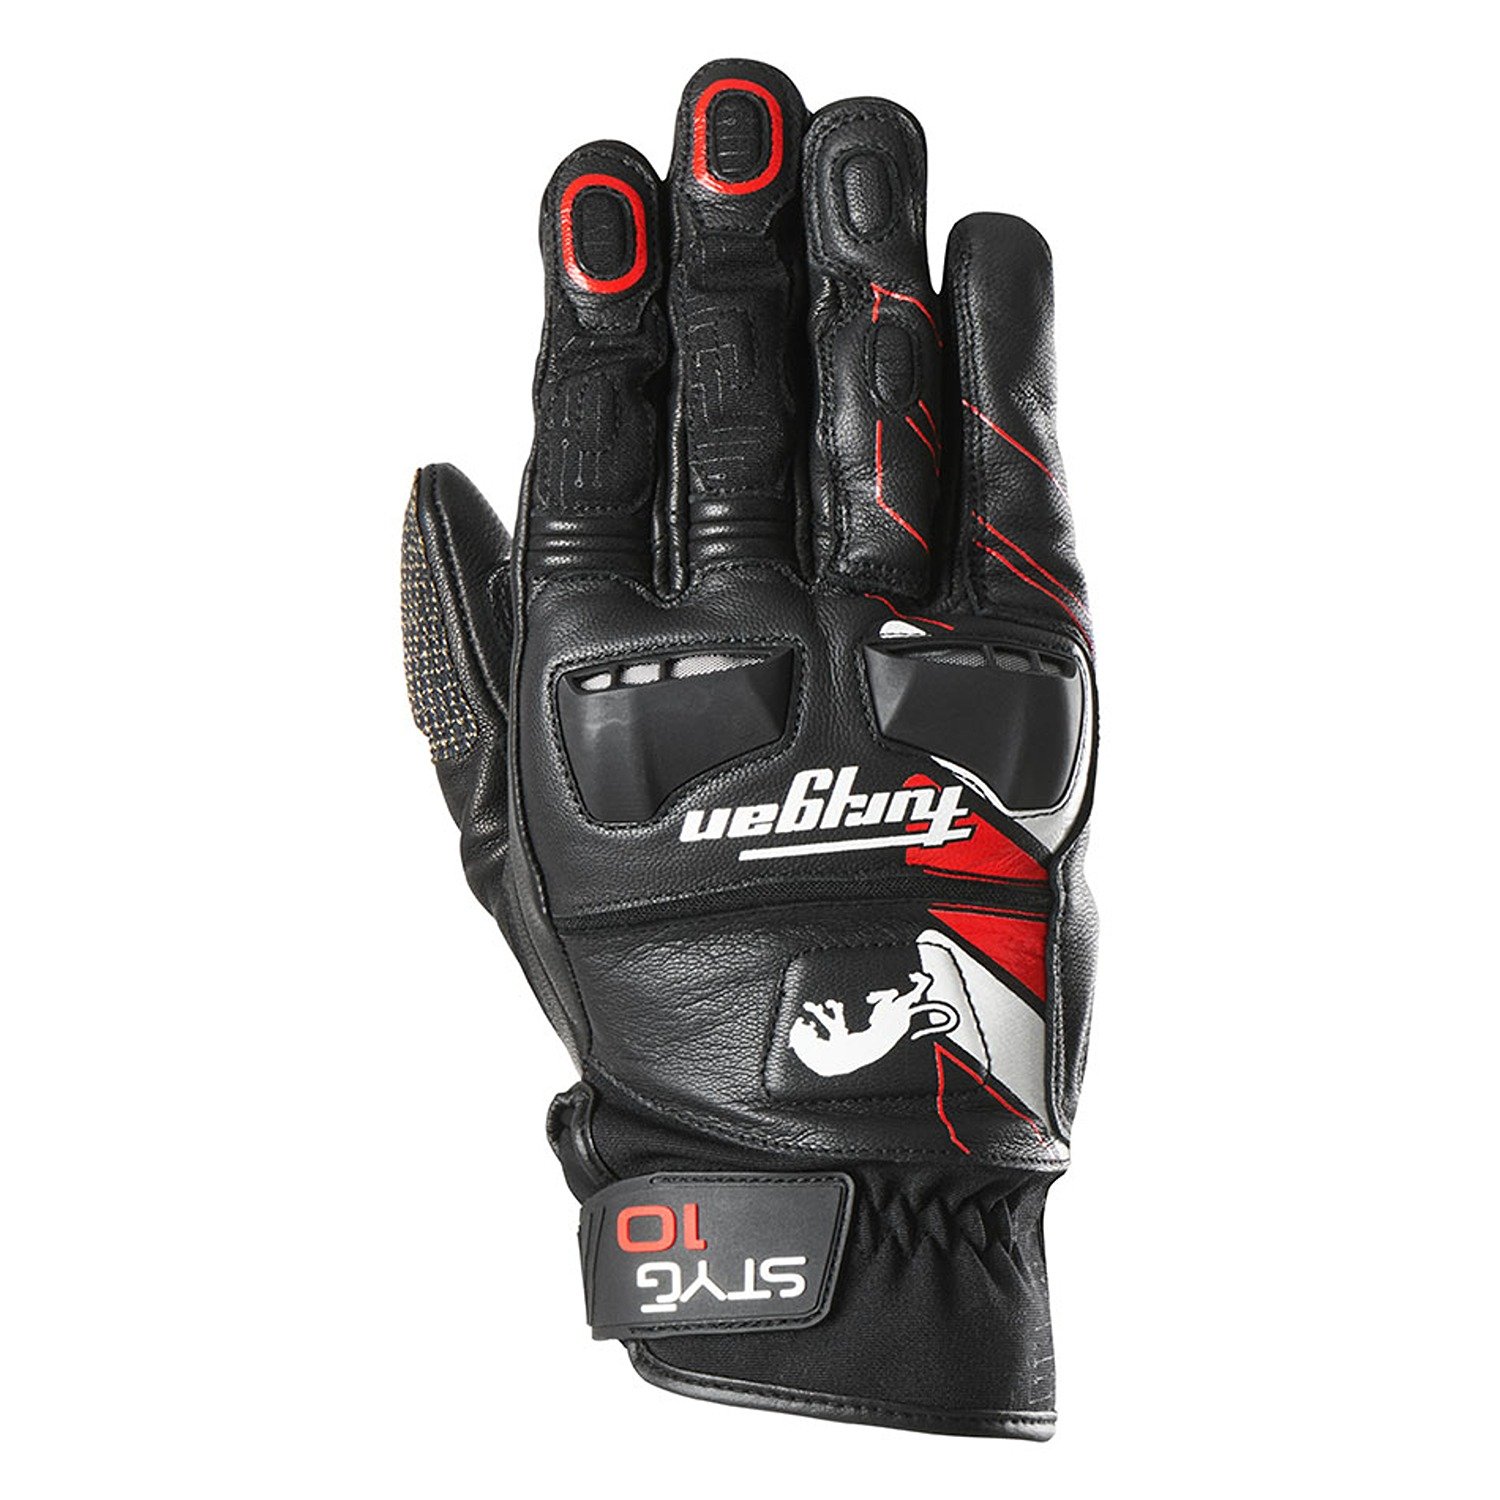 Image of Furygan Styg10 Gloves Black White Red Size S EN